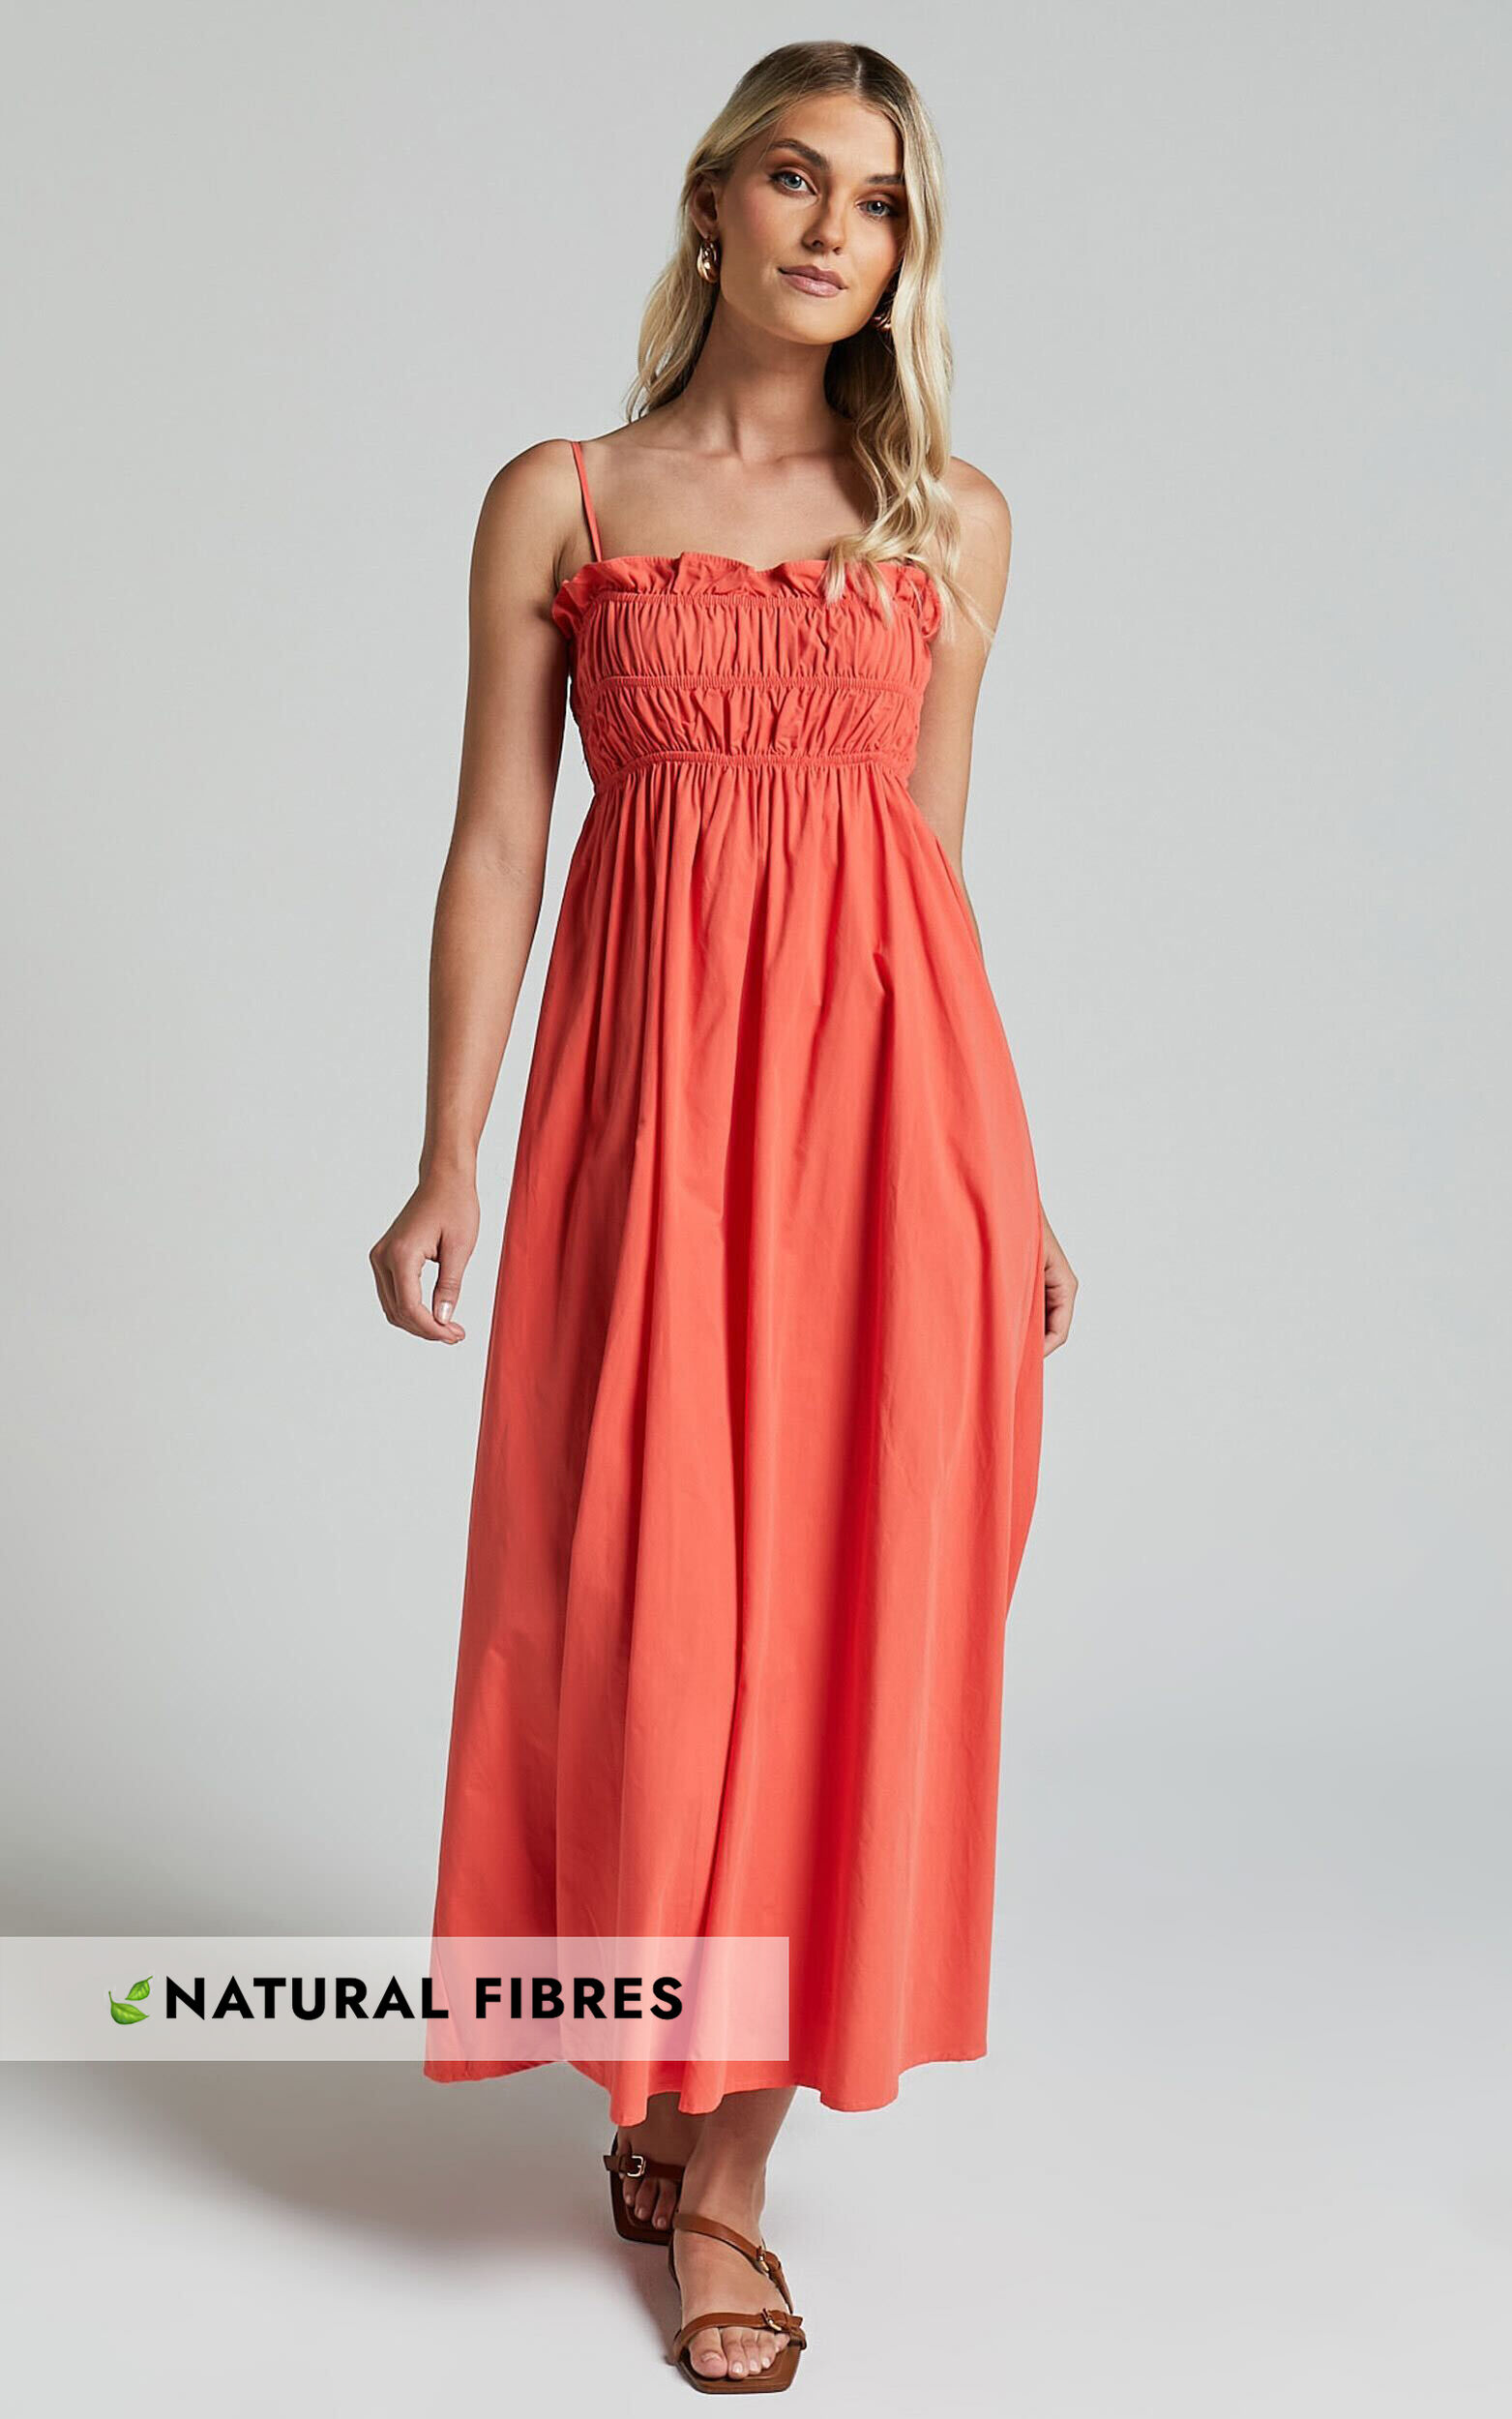 Aurora Midi Dress - Straight Neckline Sleeveless Dress in Orange Red - 06, RED1